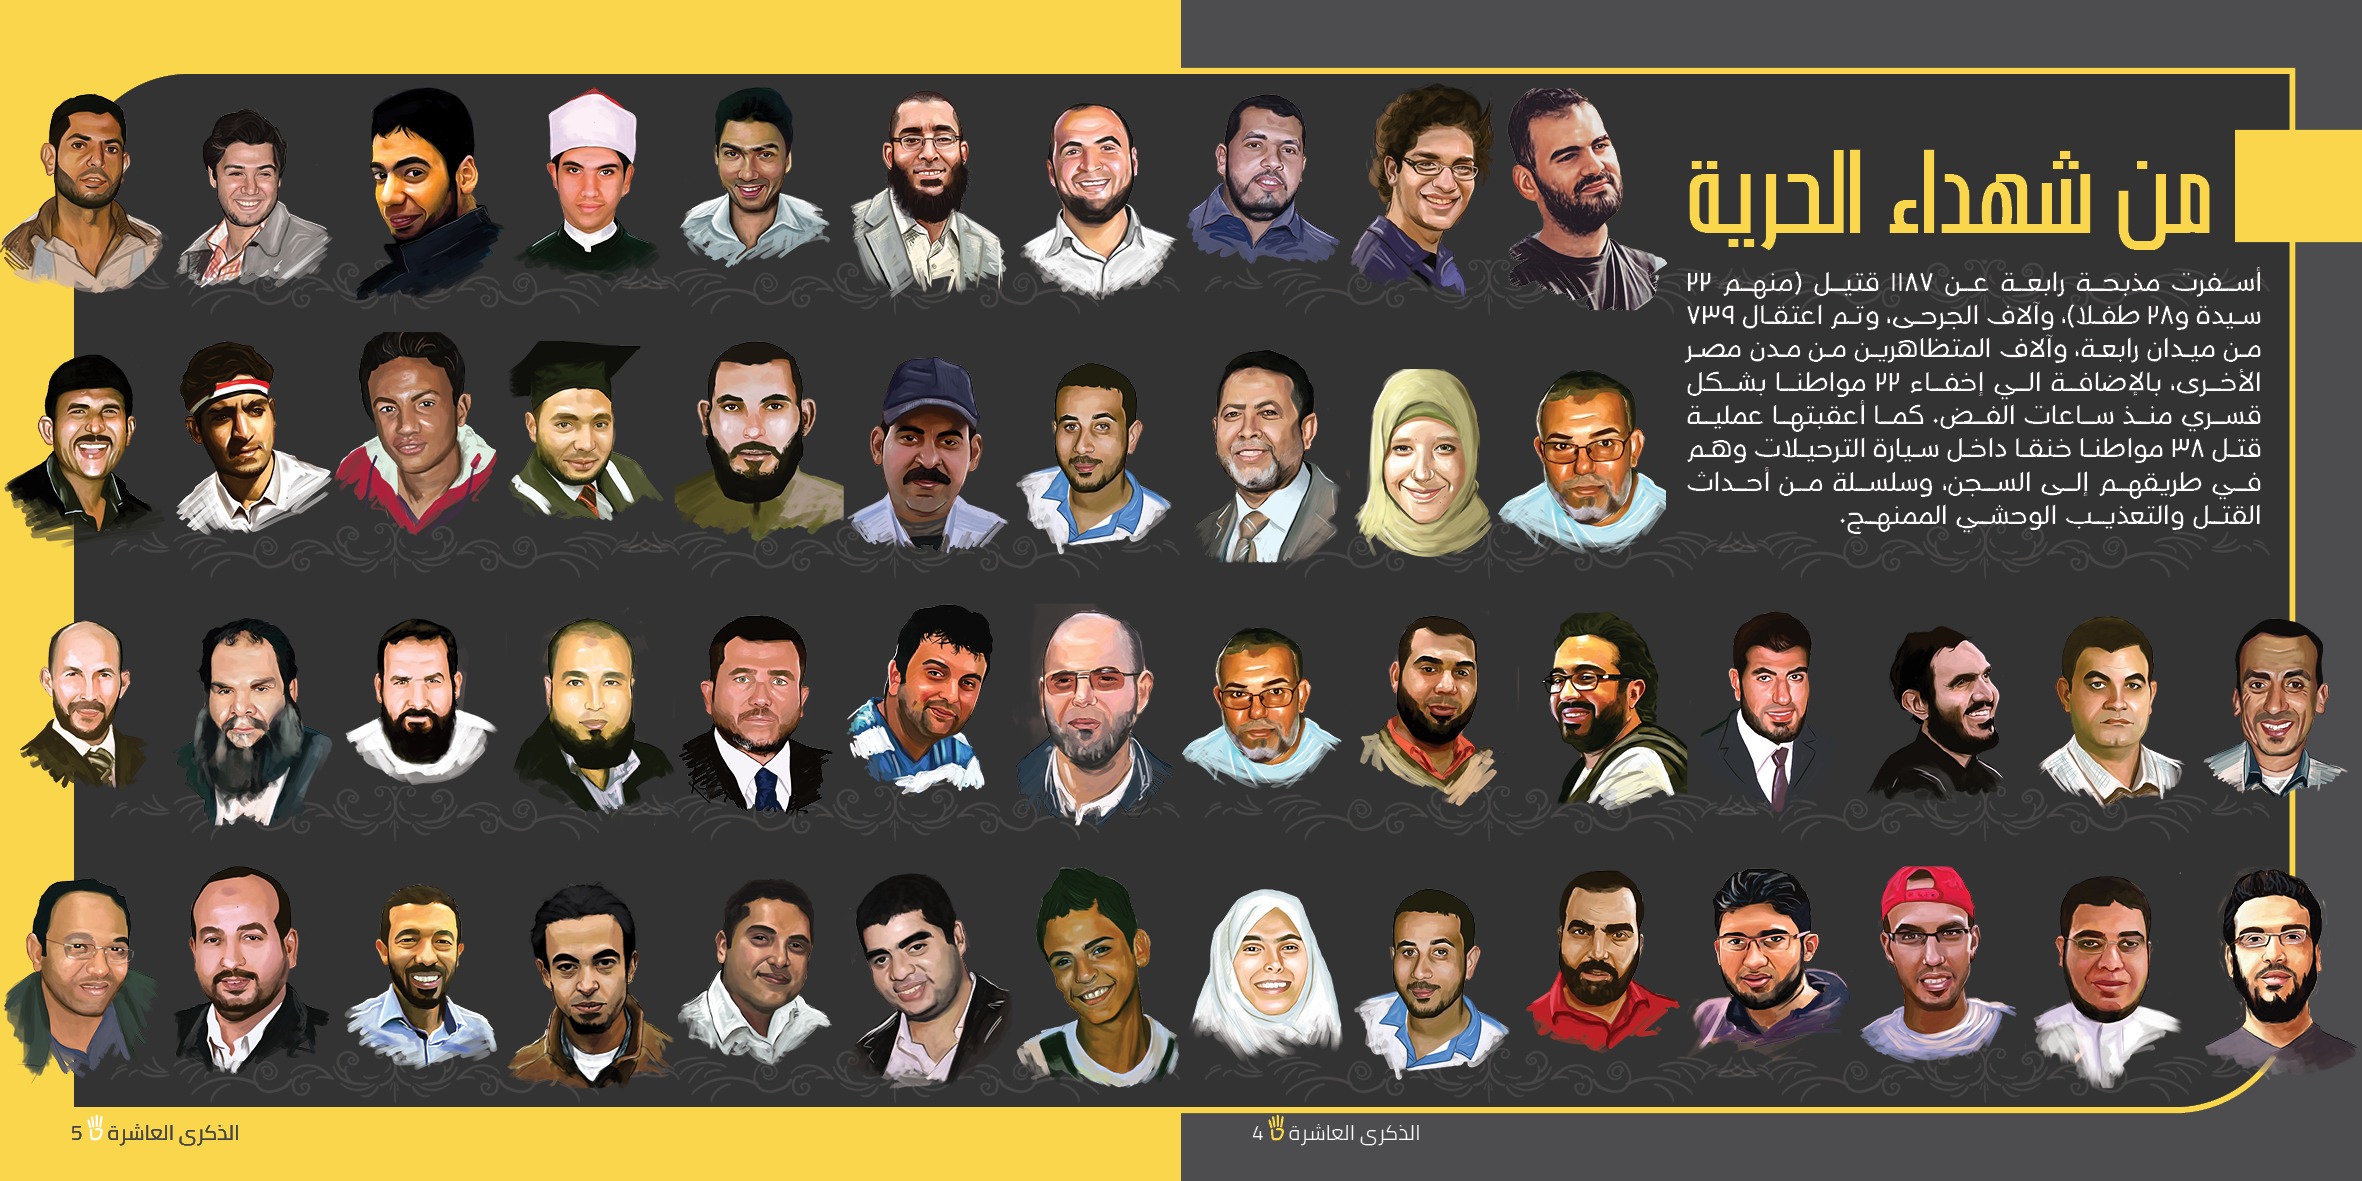 تغطية عالمية صحفية وحقوقية لذكرى مجزرة رابعة